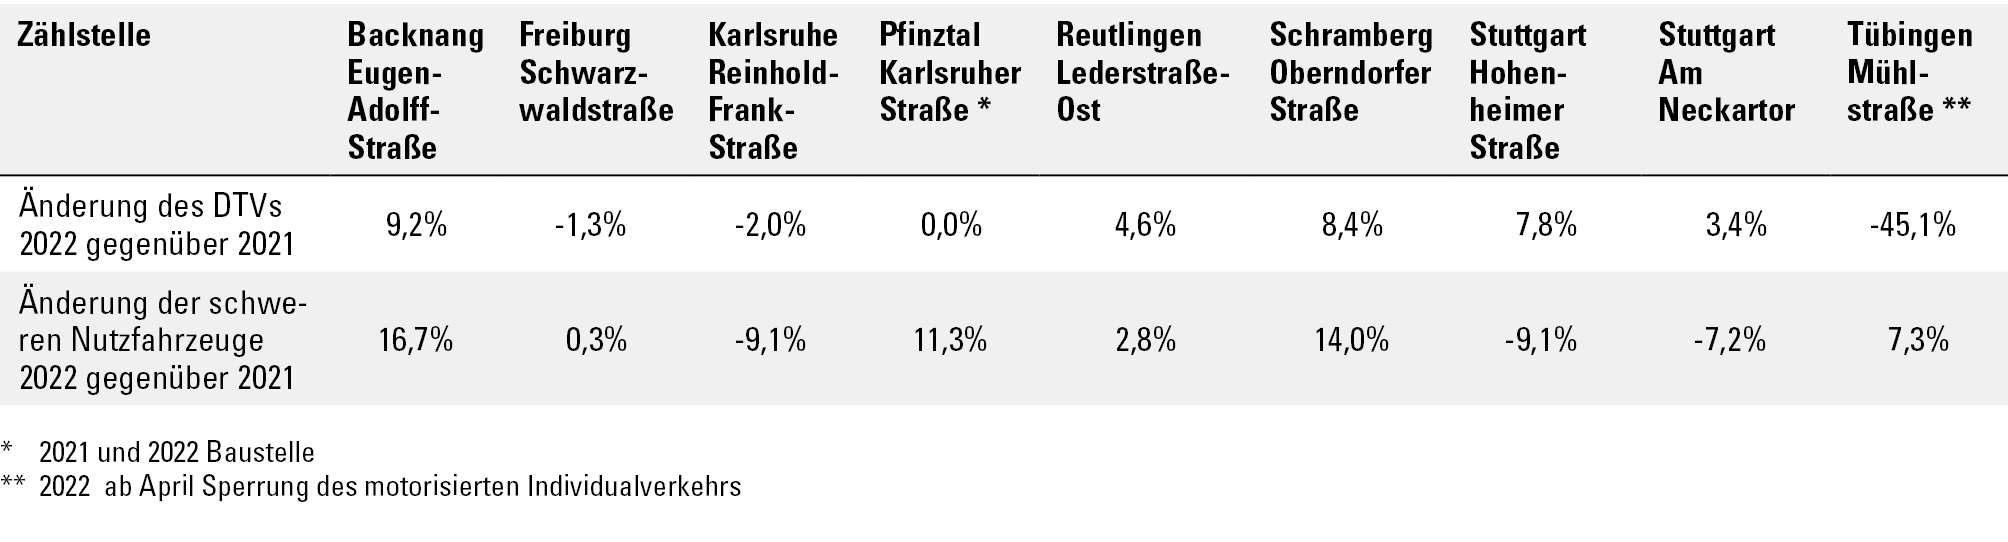 Tabellarische Darstellung der prozentualen Veränderungen der Verkehrsstärken (DTV gleich durchschnittlicher Verkehr) und der schweren Nutzfahrzeuge 2022 gegenüber 2021 an den Verkehrszählstellen. Die Änderungen des DTVs 2022 gegenüber 2021 liegen zwischen -45,1 Prozent (Tübingen Mühlstraße, ab April 2022 Sperrung der Straße für den motorisierten Individualverkehr) bis +9,2 Prozent (Backnang Eugen-Adolff-Straße). Die Änderungen der schweren Nutzfahrzeuge 2022 gegenüber 2021 zeigen eine Spannweite von -9,1 Prozent (Karlsruhe Reinhold-Frank-Straße und Stuttgart Hohenheimer Straße) bis +16,7 Prozent (Backnang Eugen-Adolff-Straße).